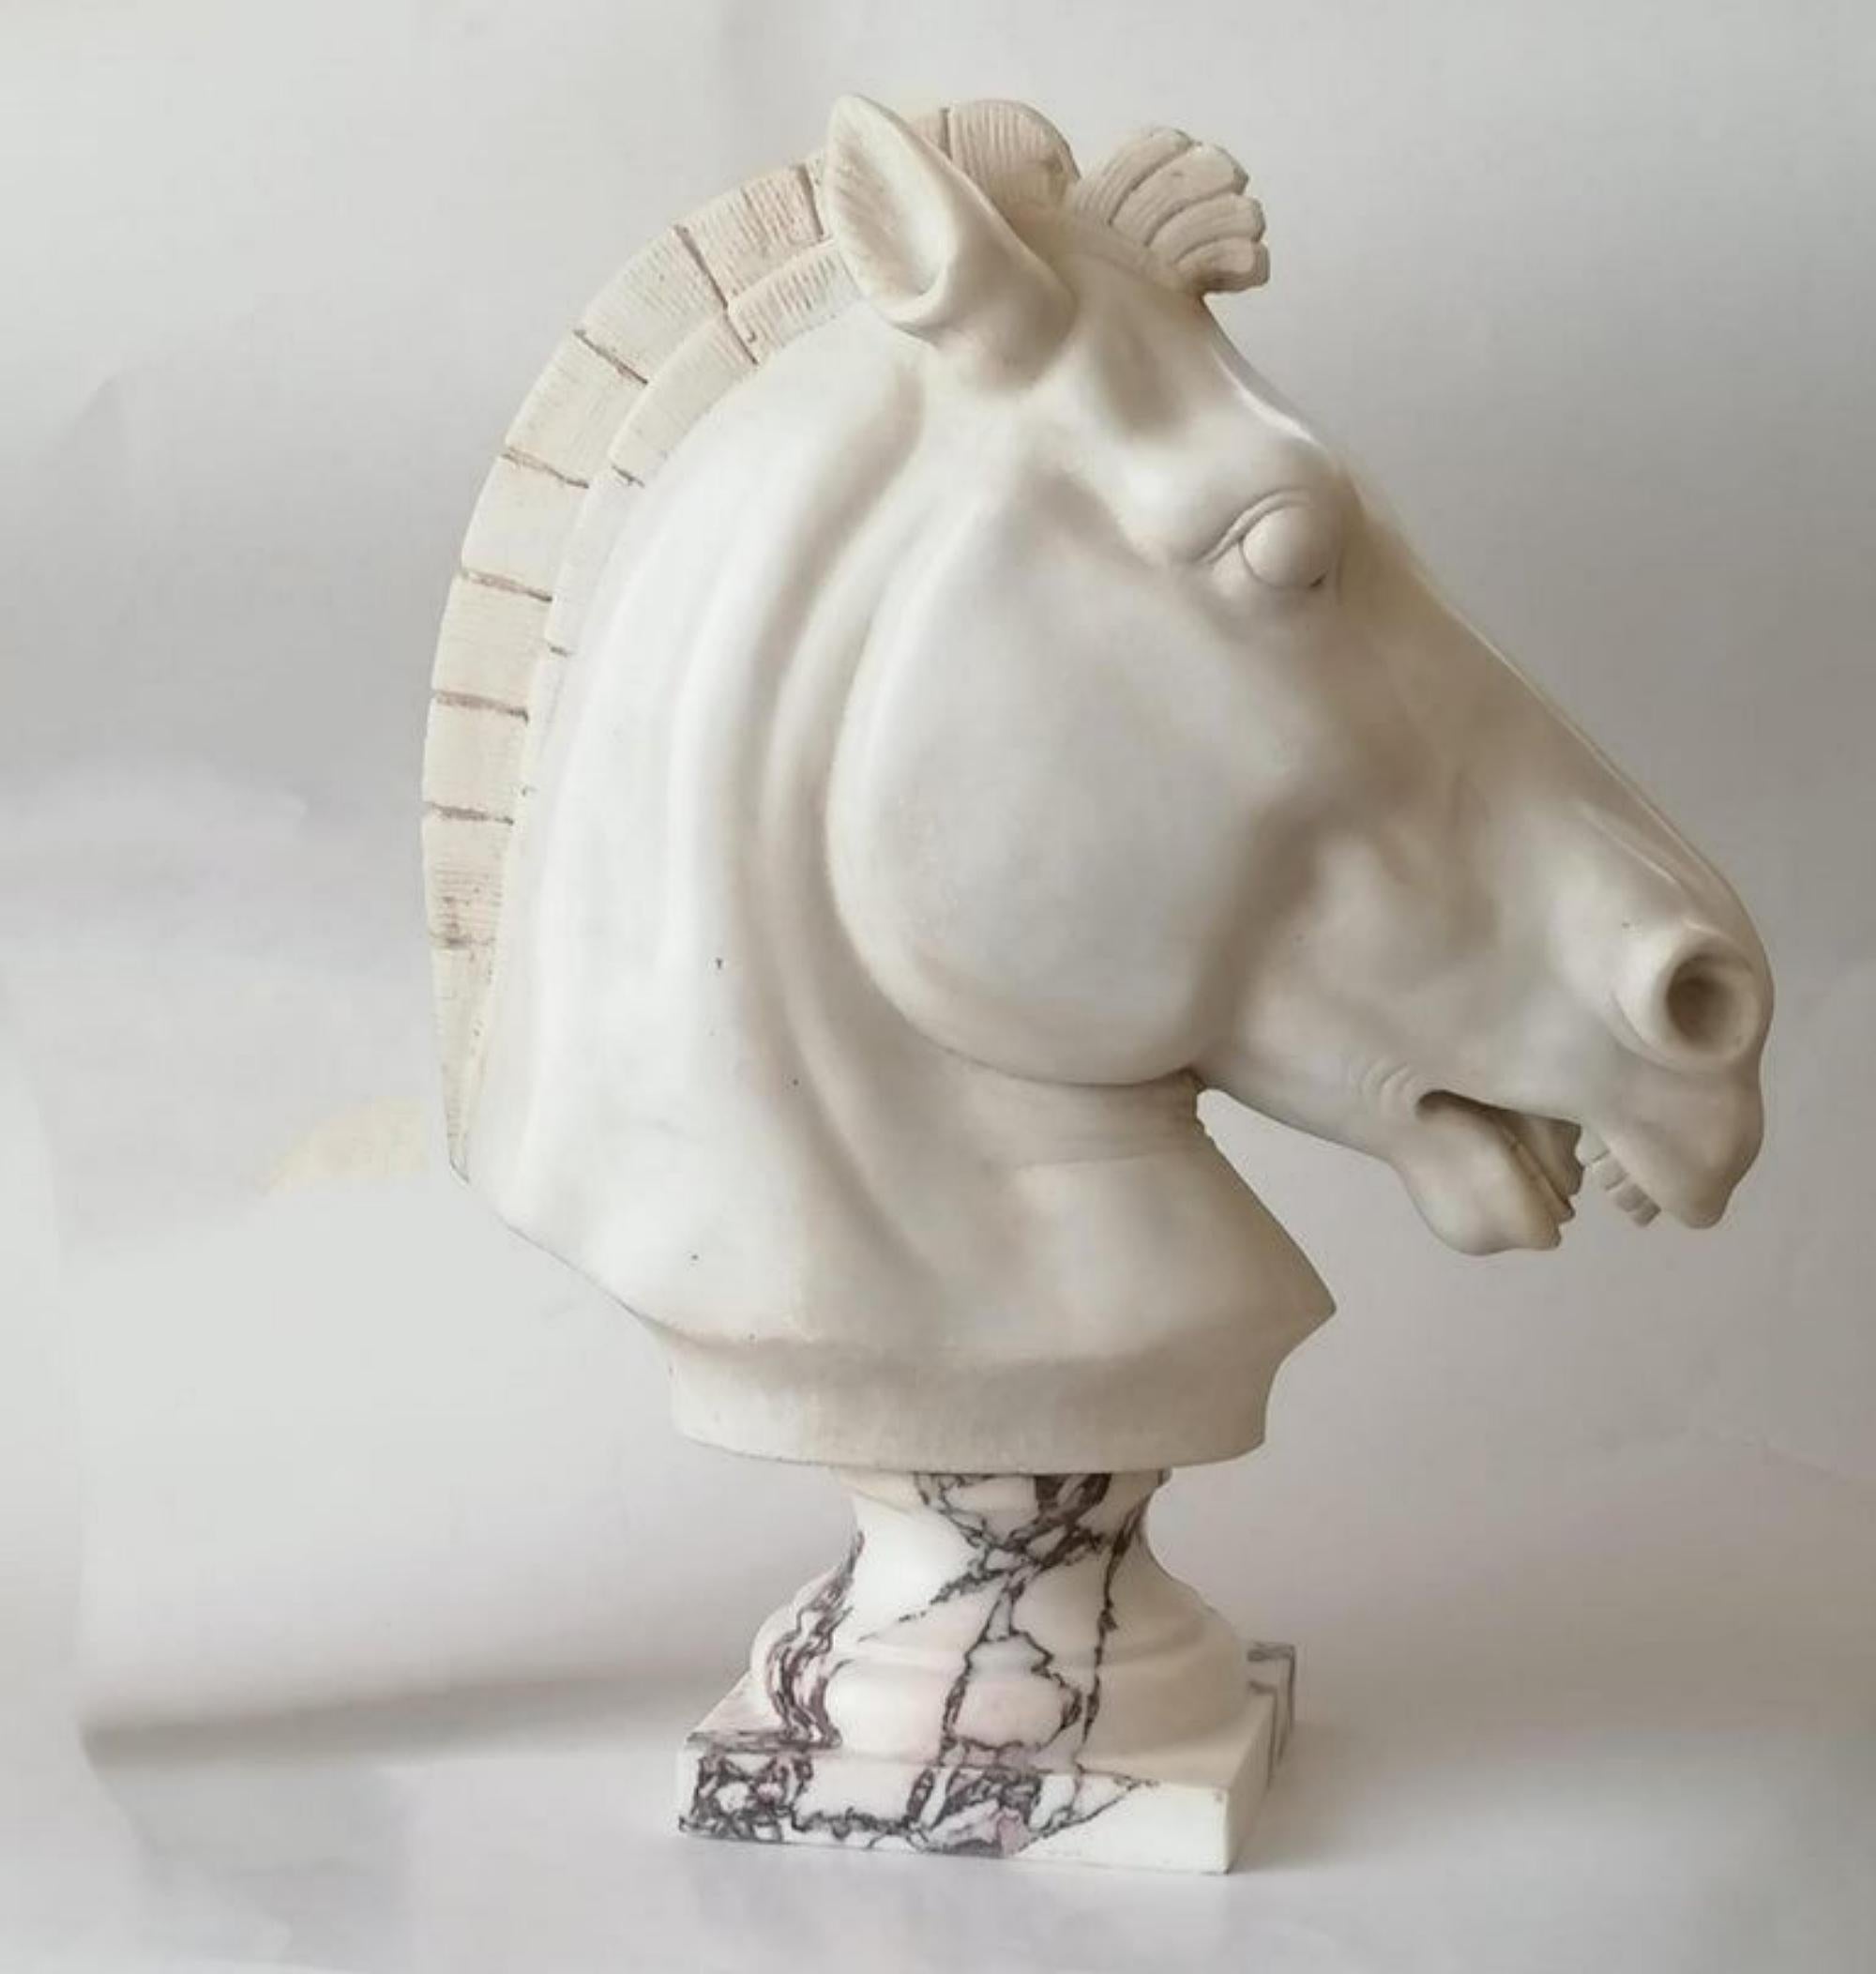 Sculpture de tête de cheval sur marbre blanc de Carrare d'un cheval de style classique posé sur un socle tourné en marbre de Carrare. 
Début du 20e siècle.
Dimensions : y compris la base : H 46 x 37 x 15 cm. 
Bon état - utilisé avec de petits signes